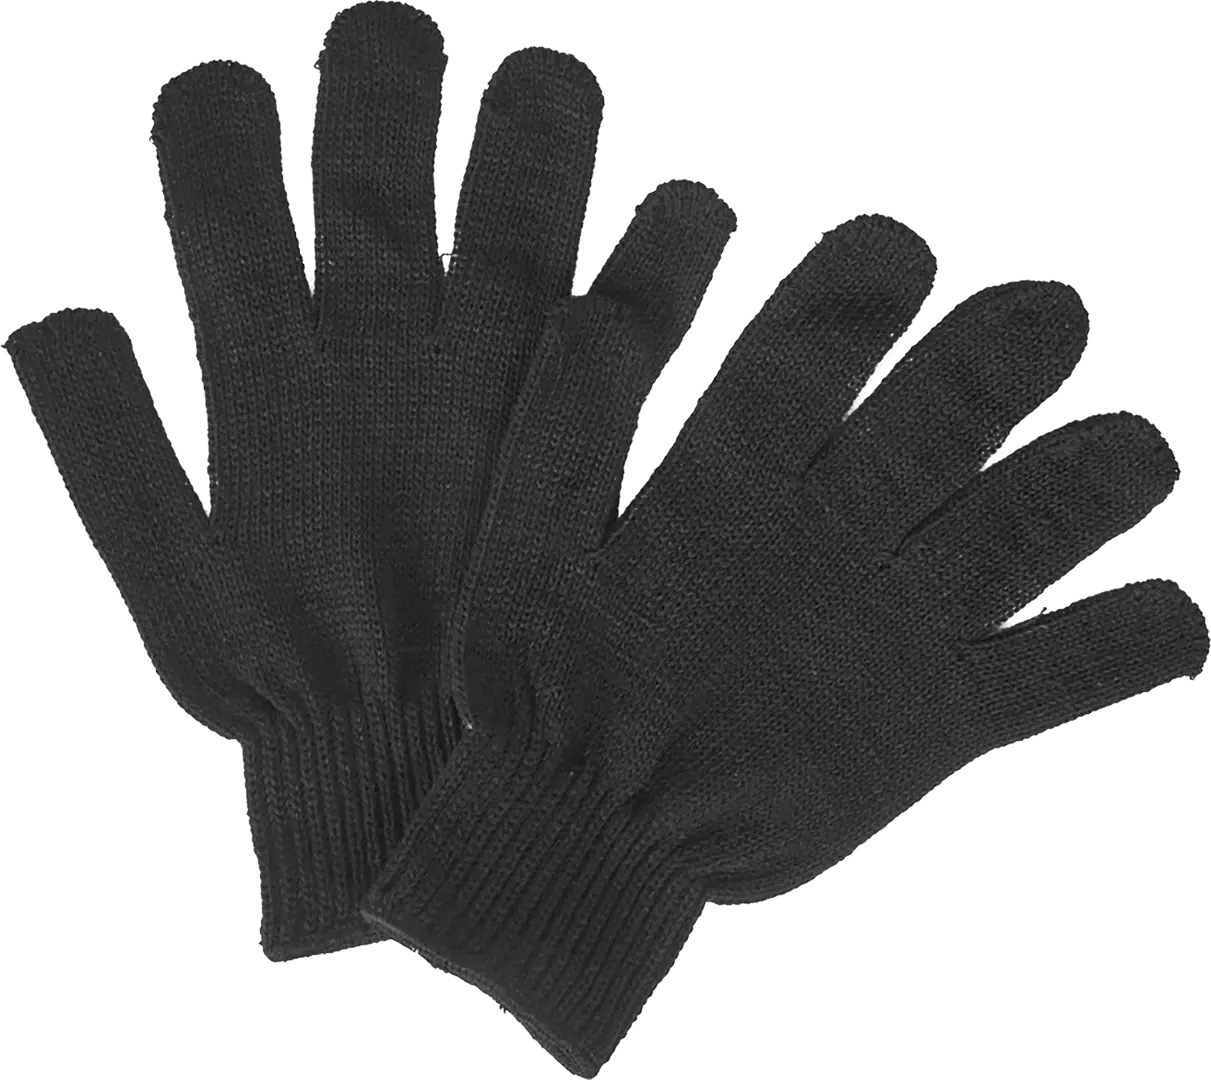 Перчатки полушерстяные ПЕР-ПШ размер 10/XL полушерстяные двойные перчатки спец sb